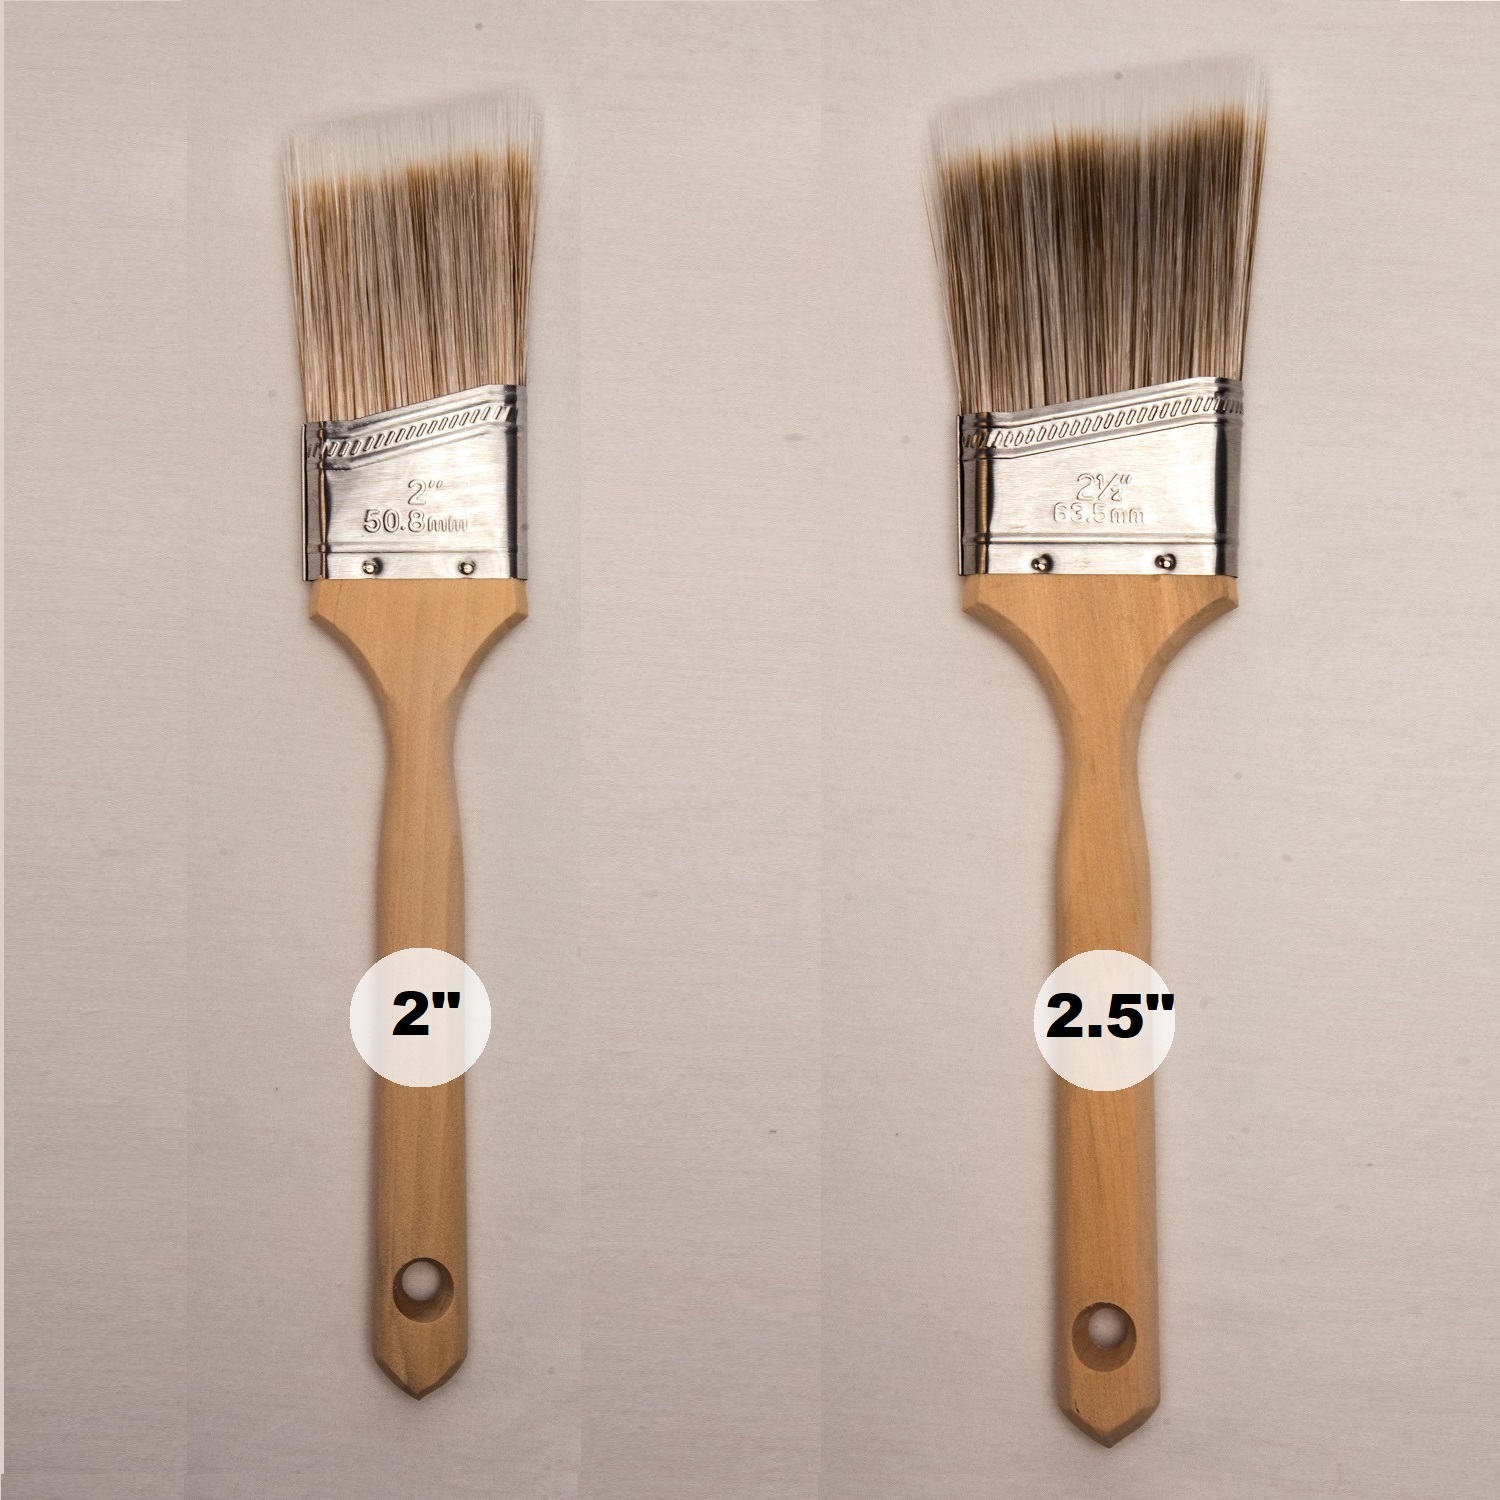 edging paint brush